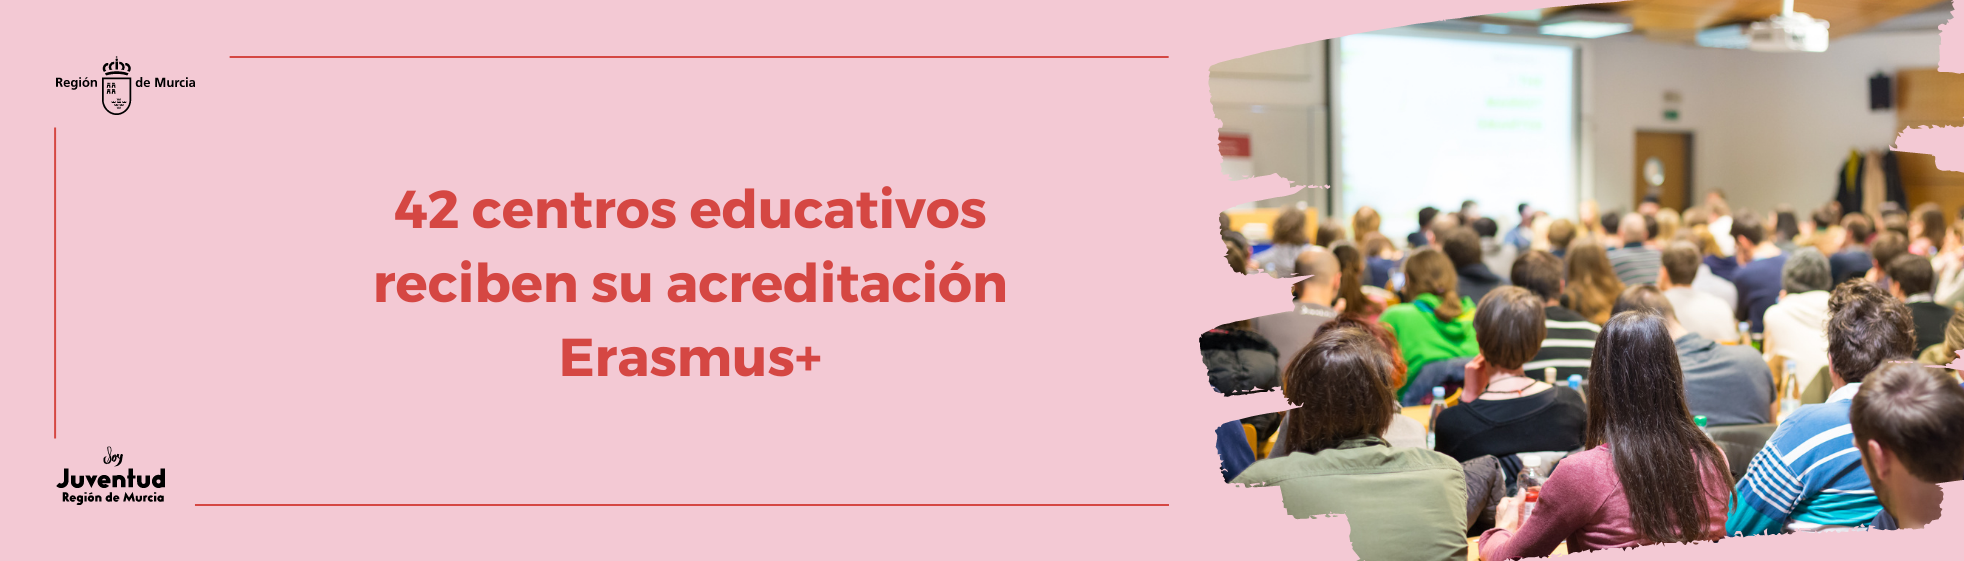 42 centros educativos reciben su acreditación Erasmus+